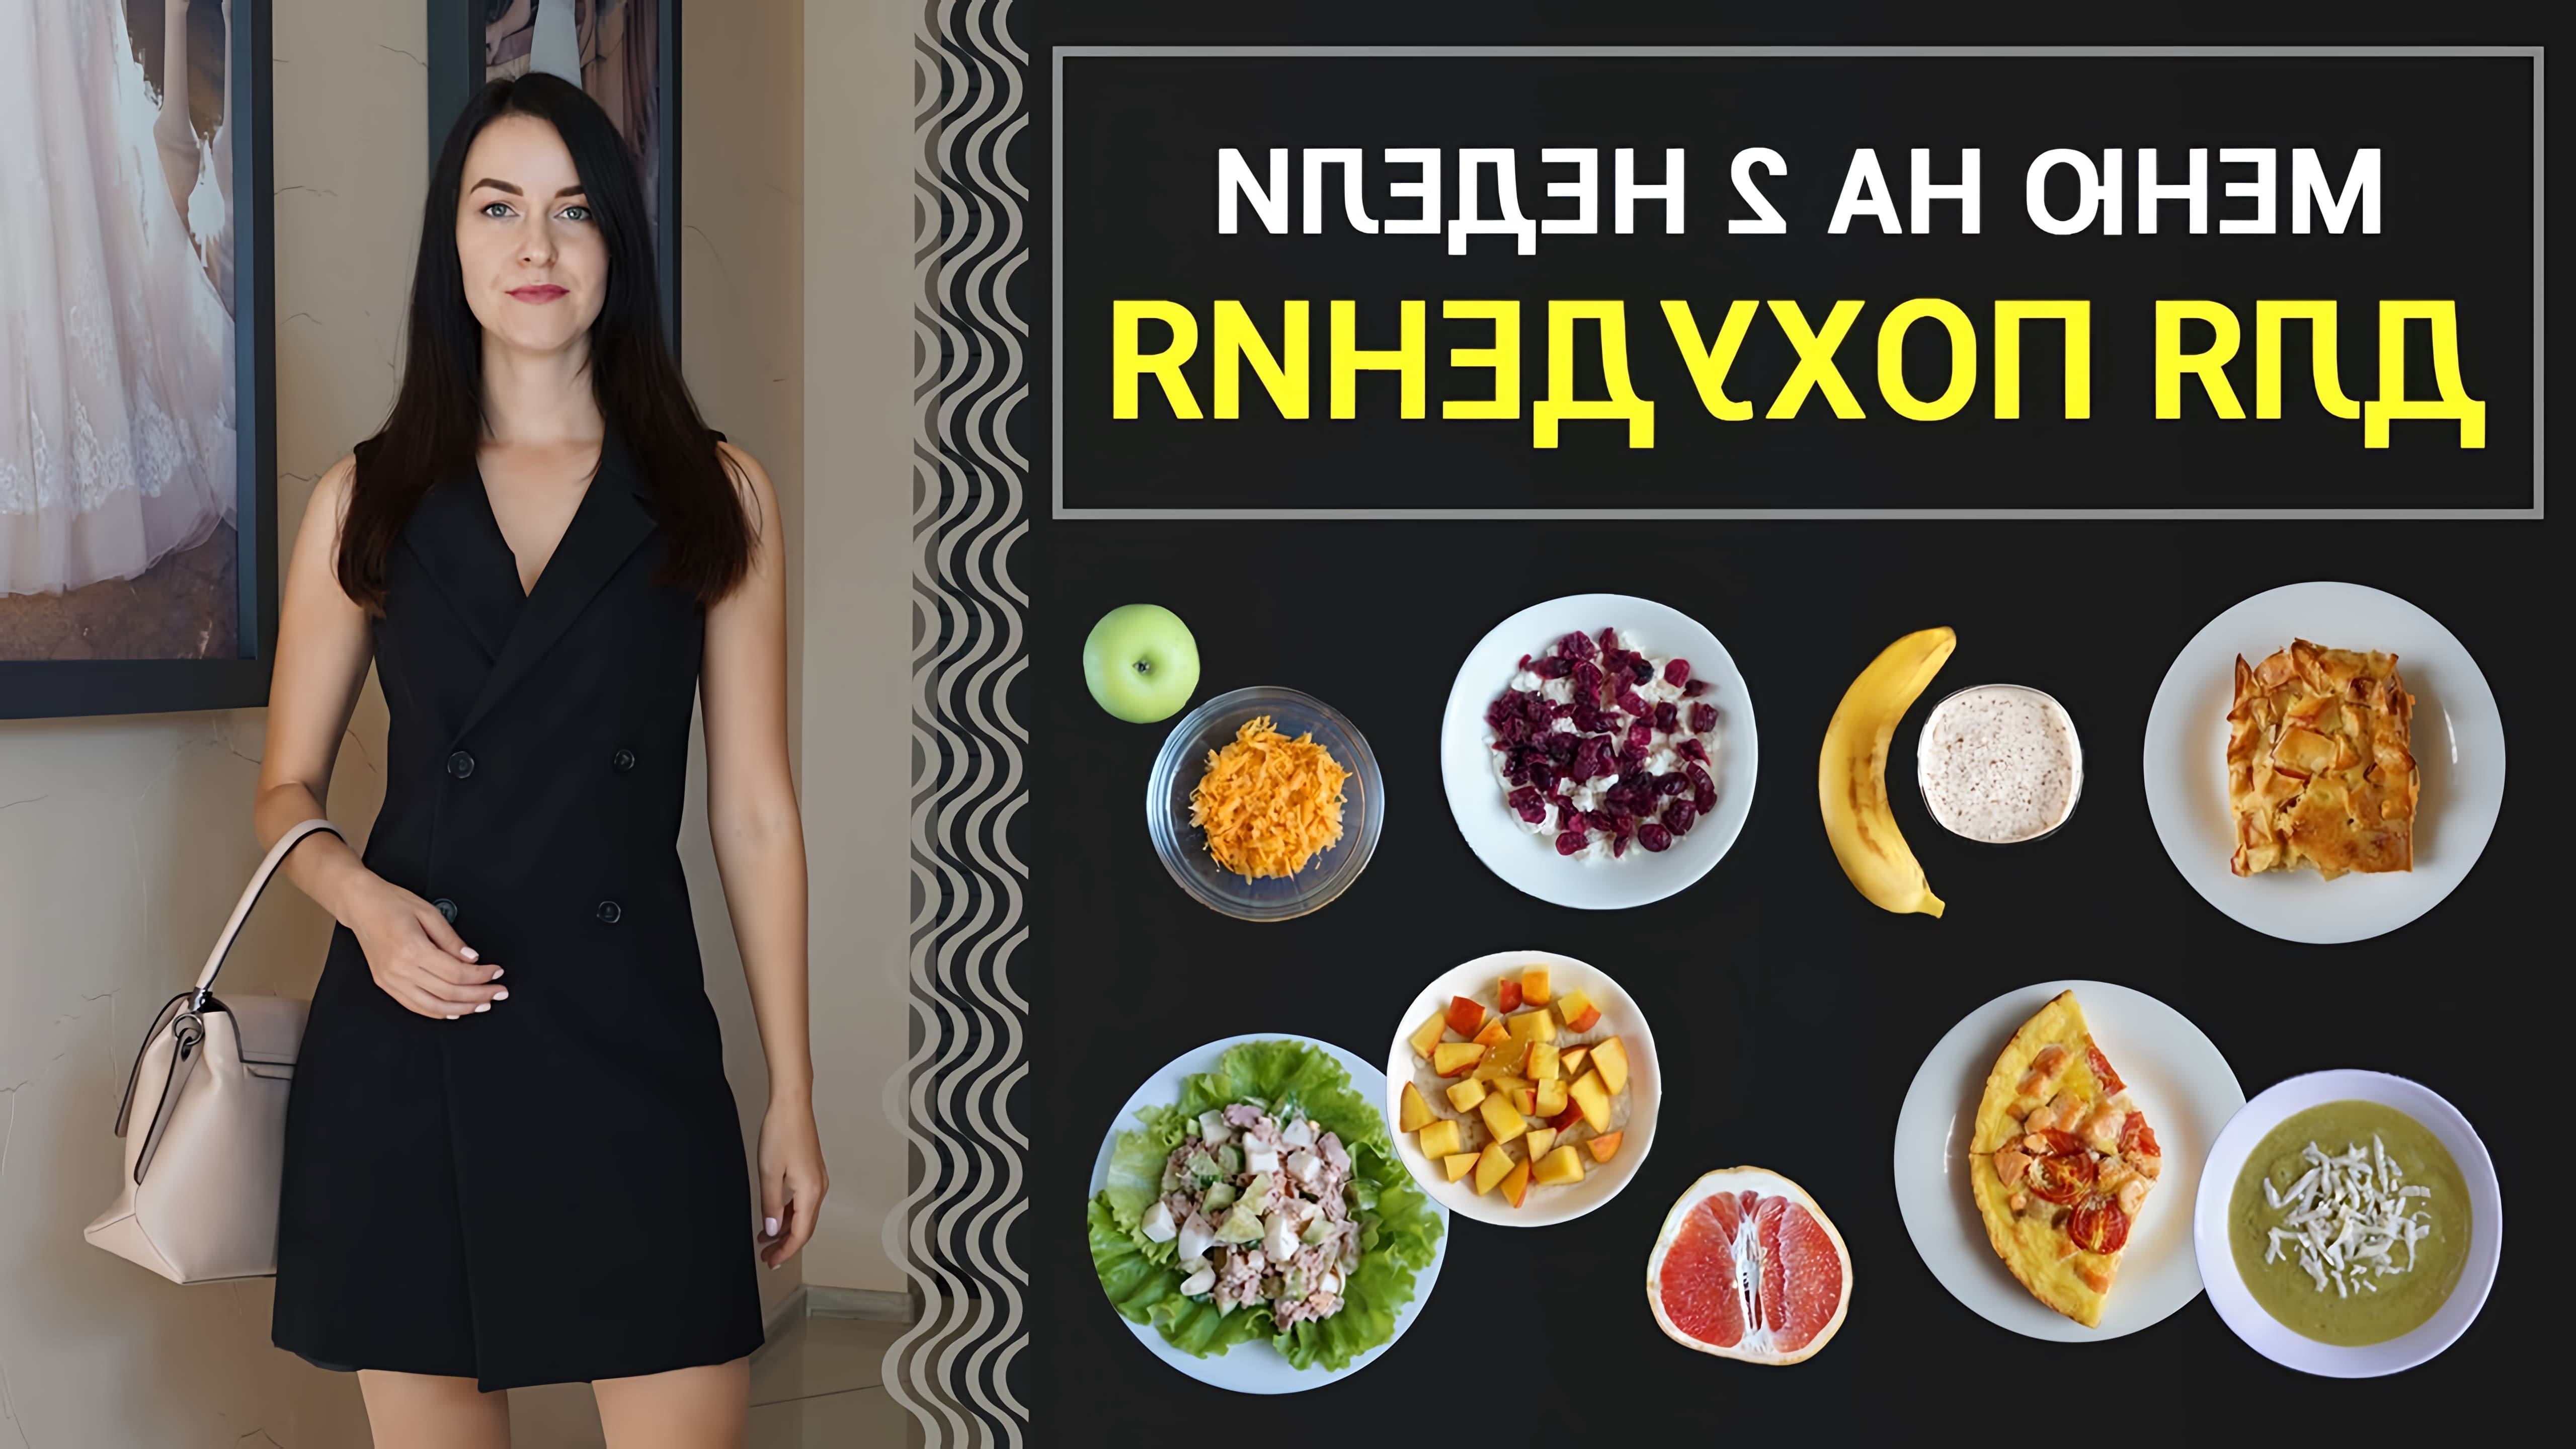 В этом видео Виктория Субботина представляет меню на две недели, которое включает в себя простые и быстрые рецепты для похудения